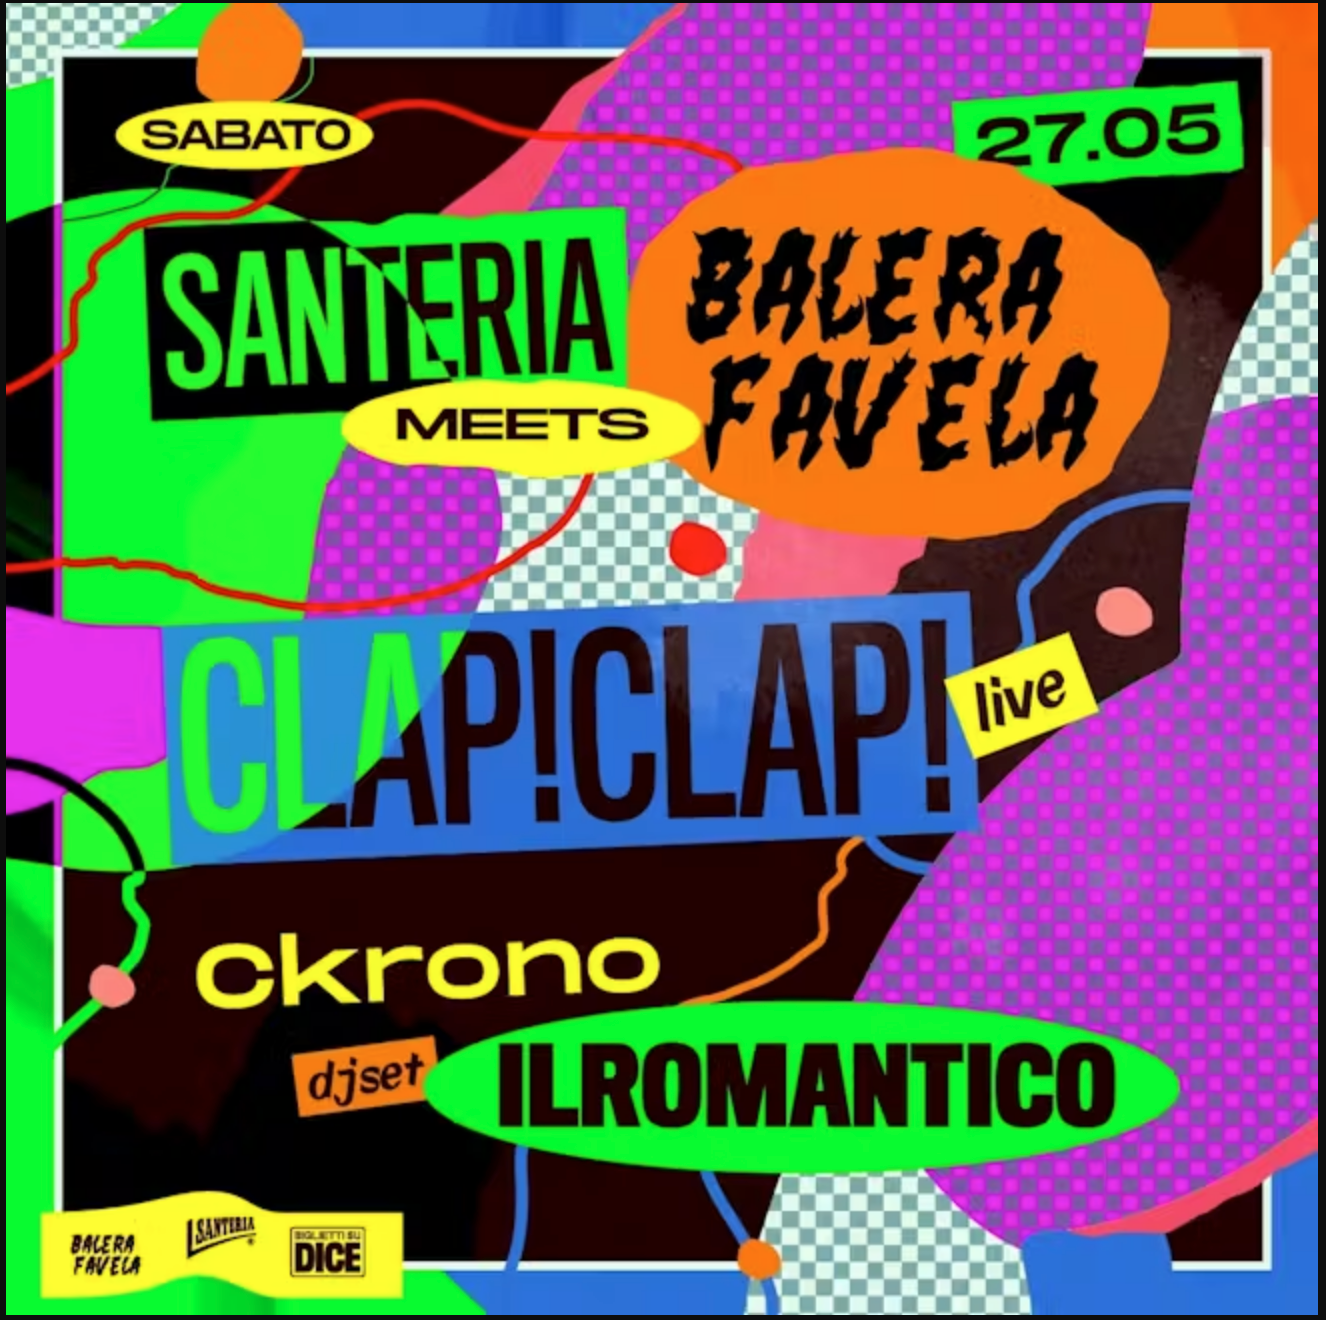 Balera Favela meets Santeria w/ Clap! Clap! live - フライヤー表